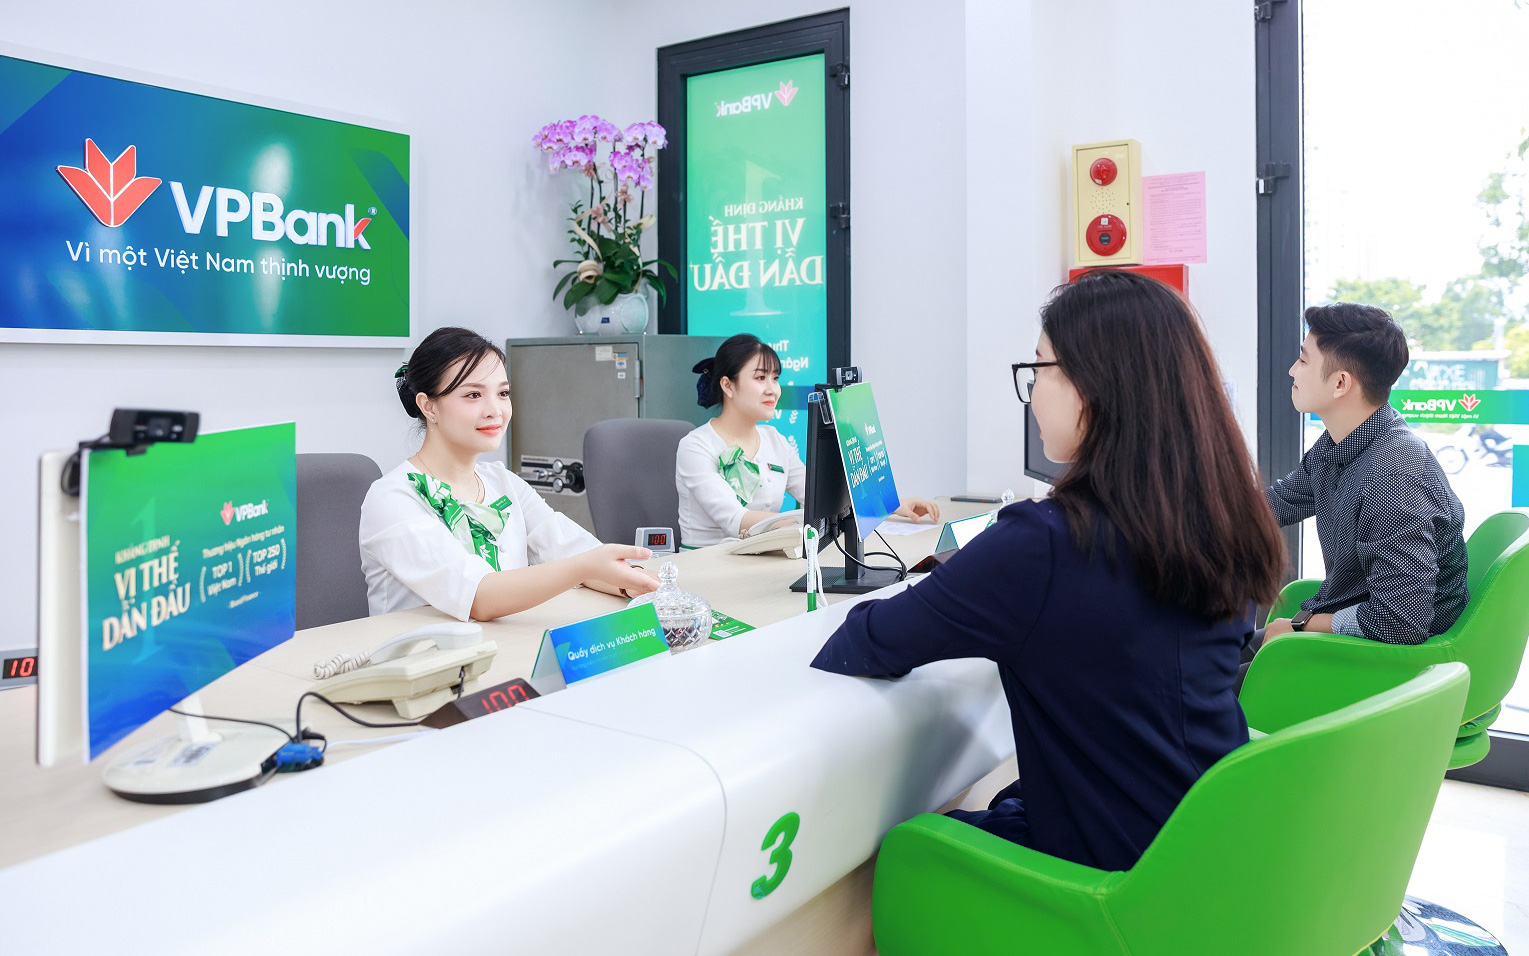 VPBank giảm lãi suất cho vay tới 1,5%/năm để hỗ trợ khách hàng